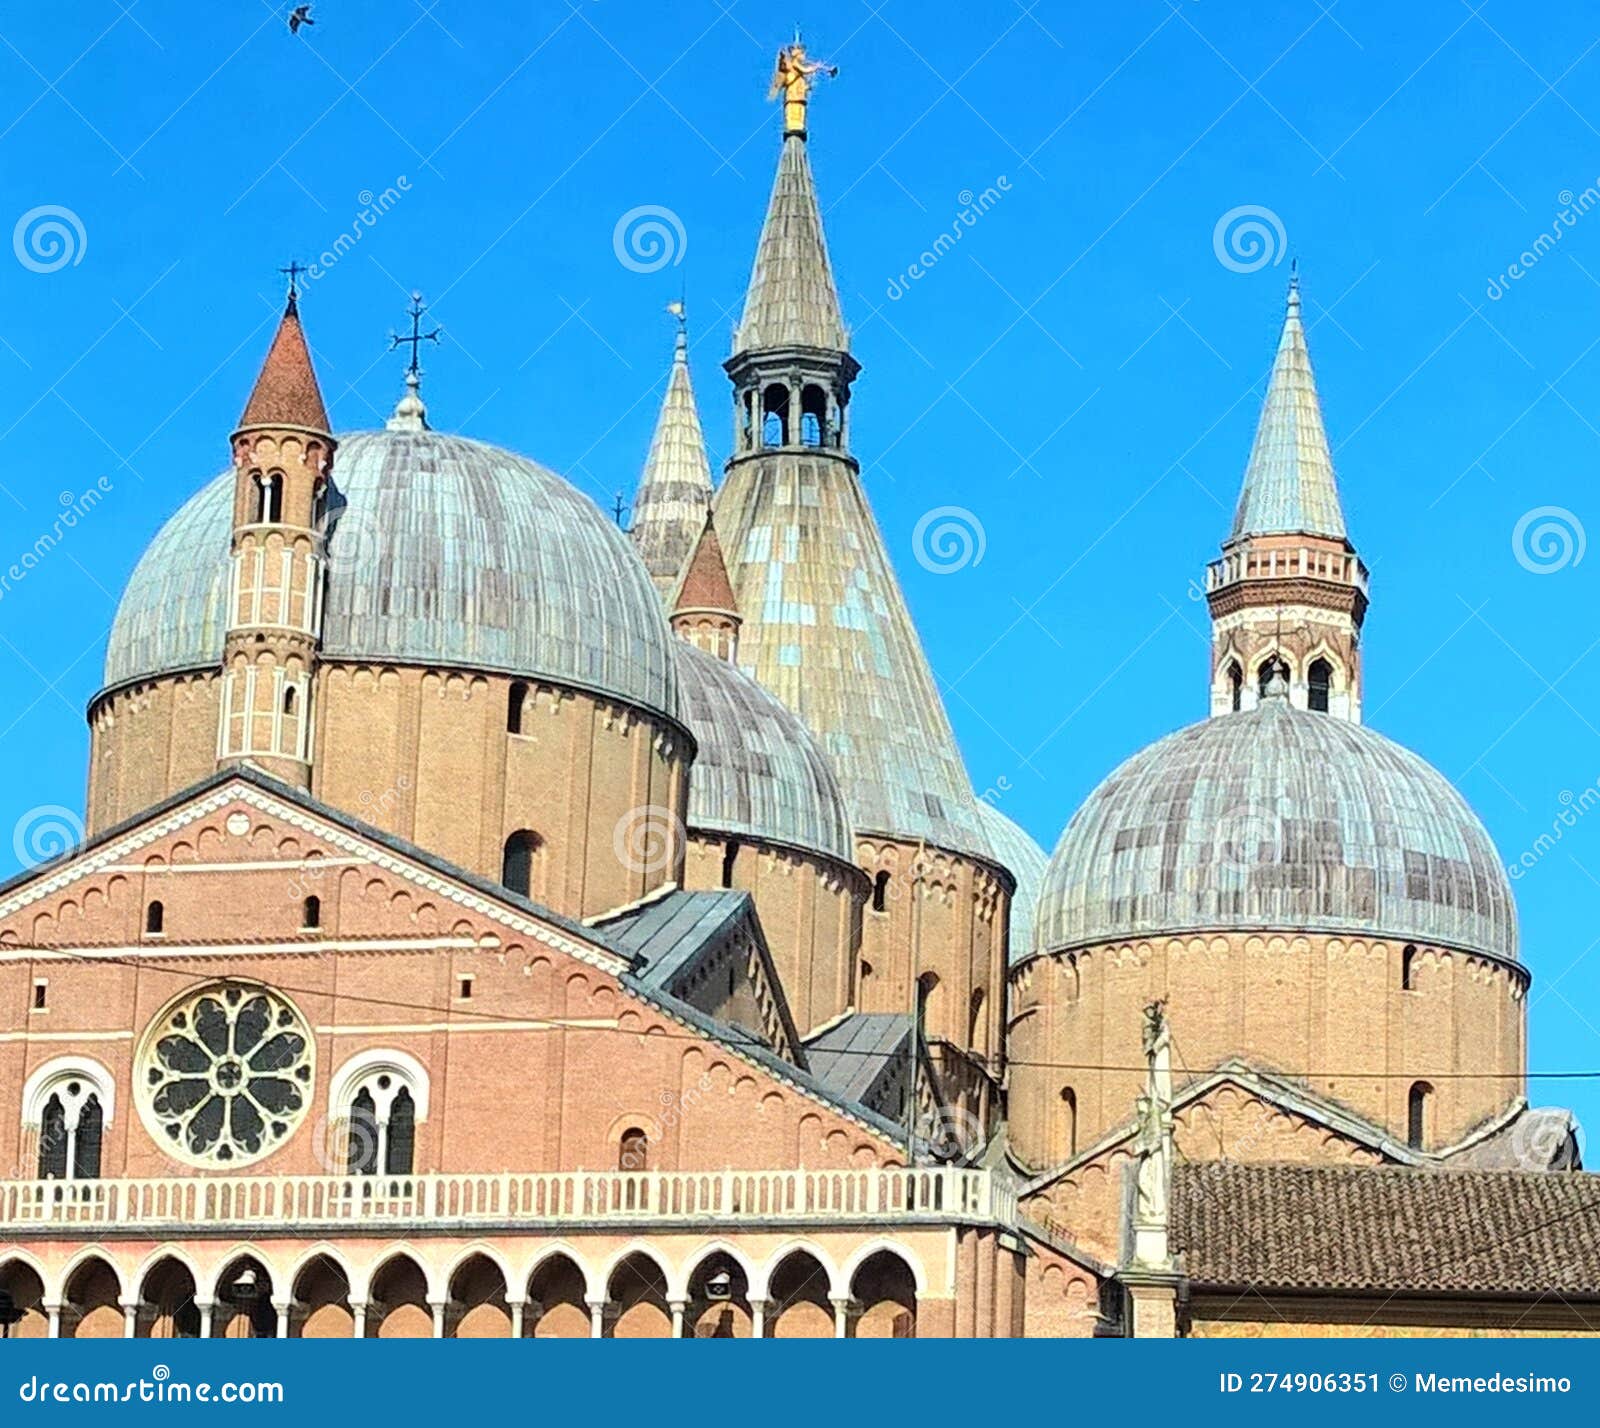 domes of the basilica of sant'antonio di padova